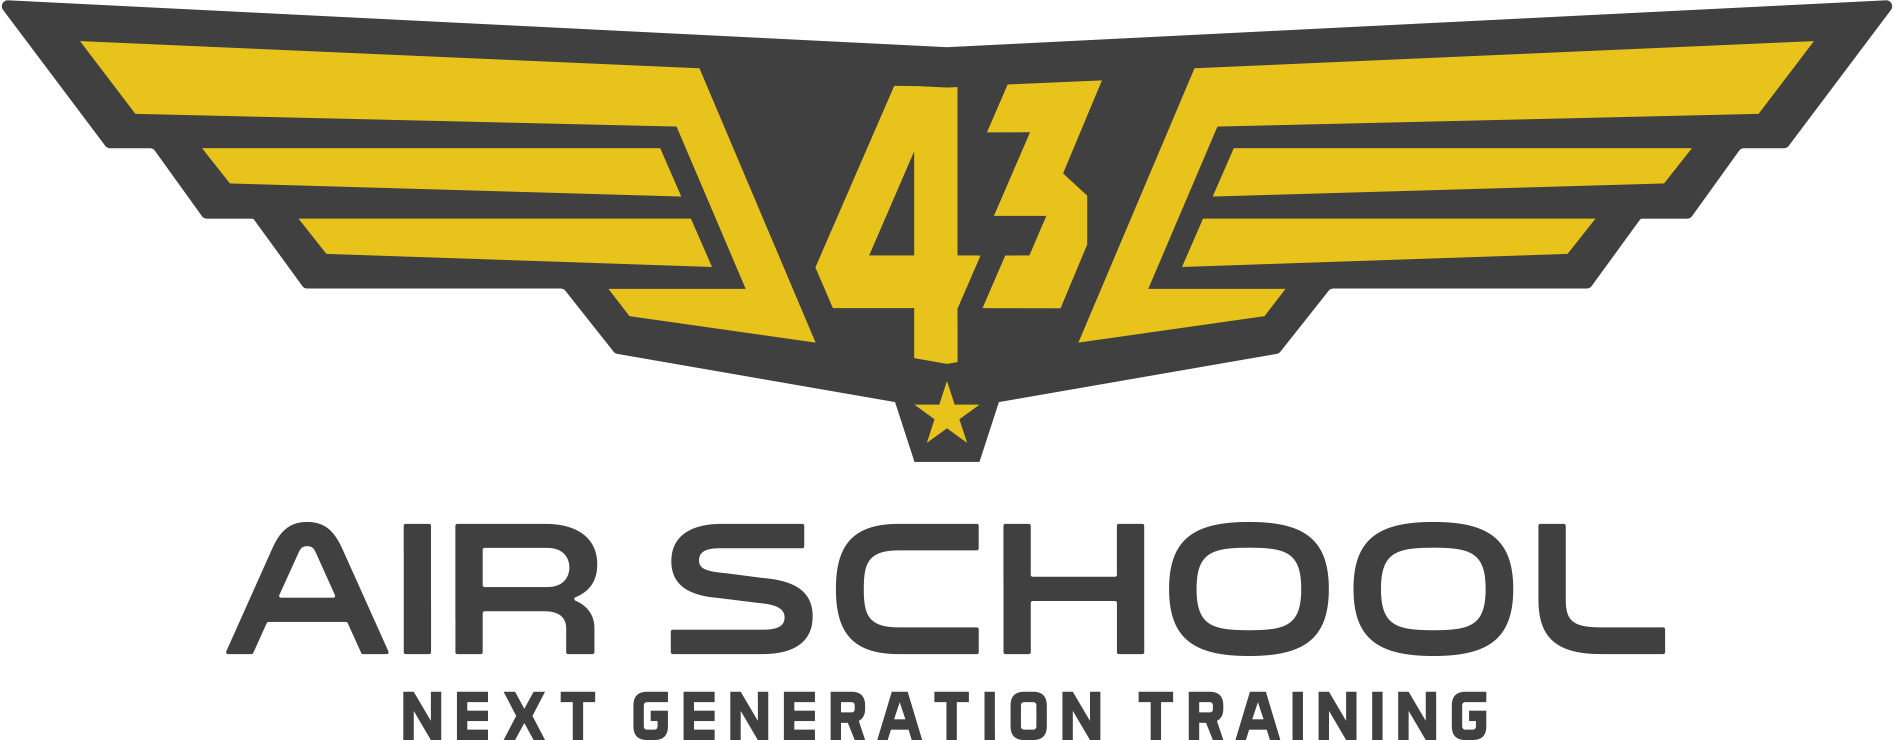 43 Air School logo - FCol